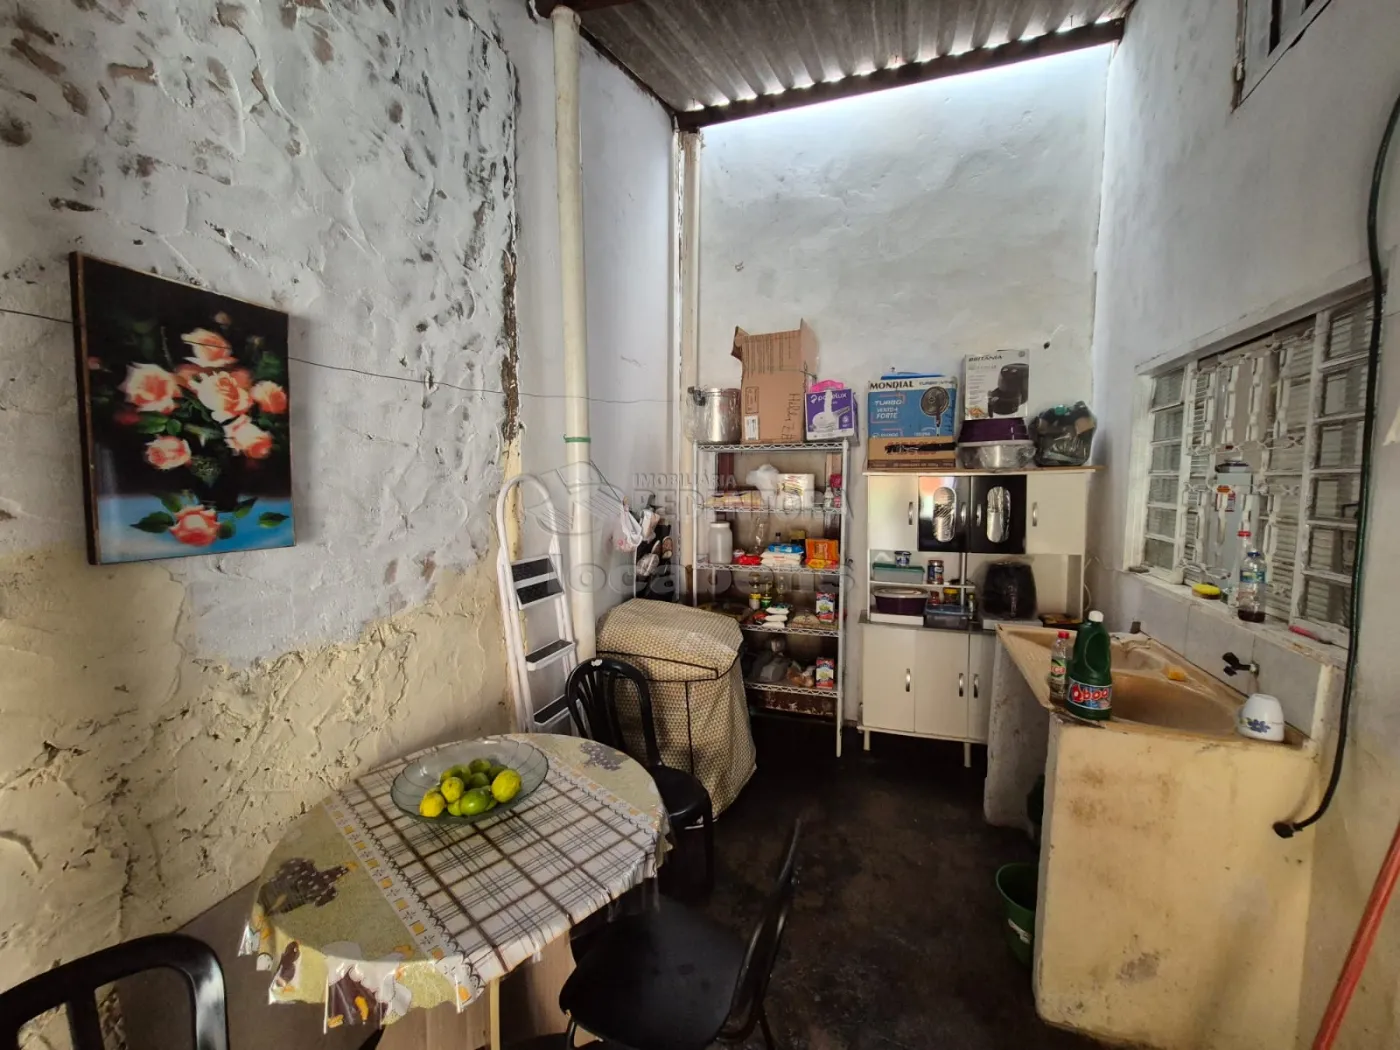 Alugar Casa / Padrão em São José do Rio Preto R$ 600,00 - Foto 9